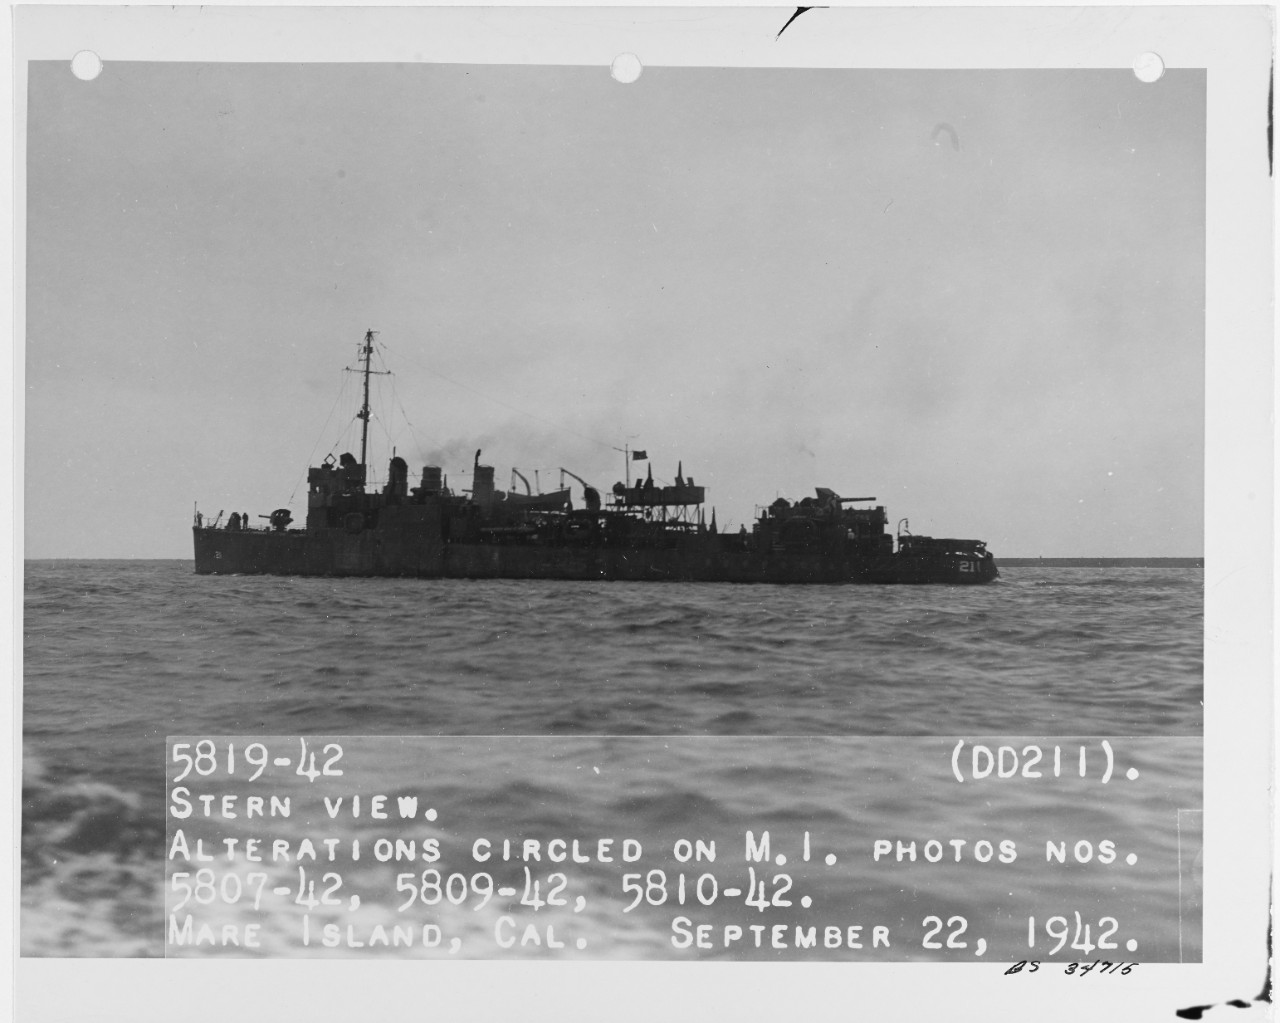 USS ALDEN (DD-211)